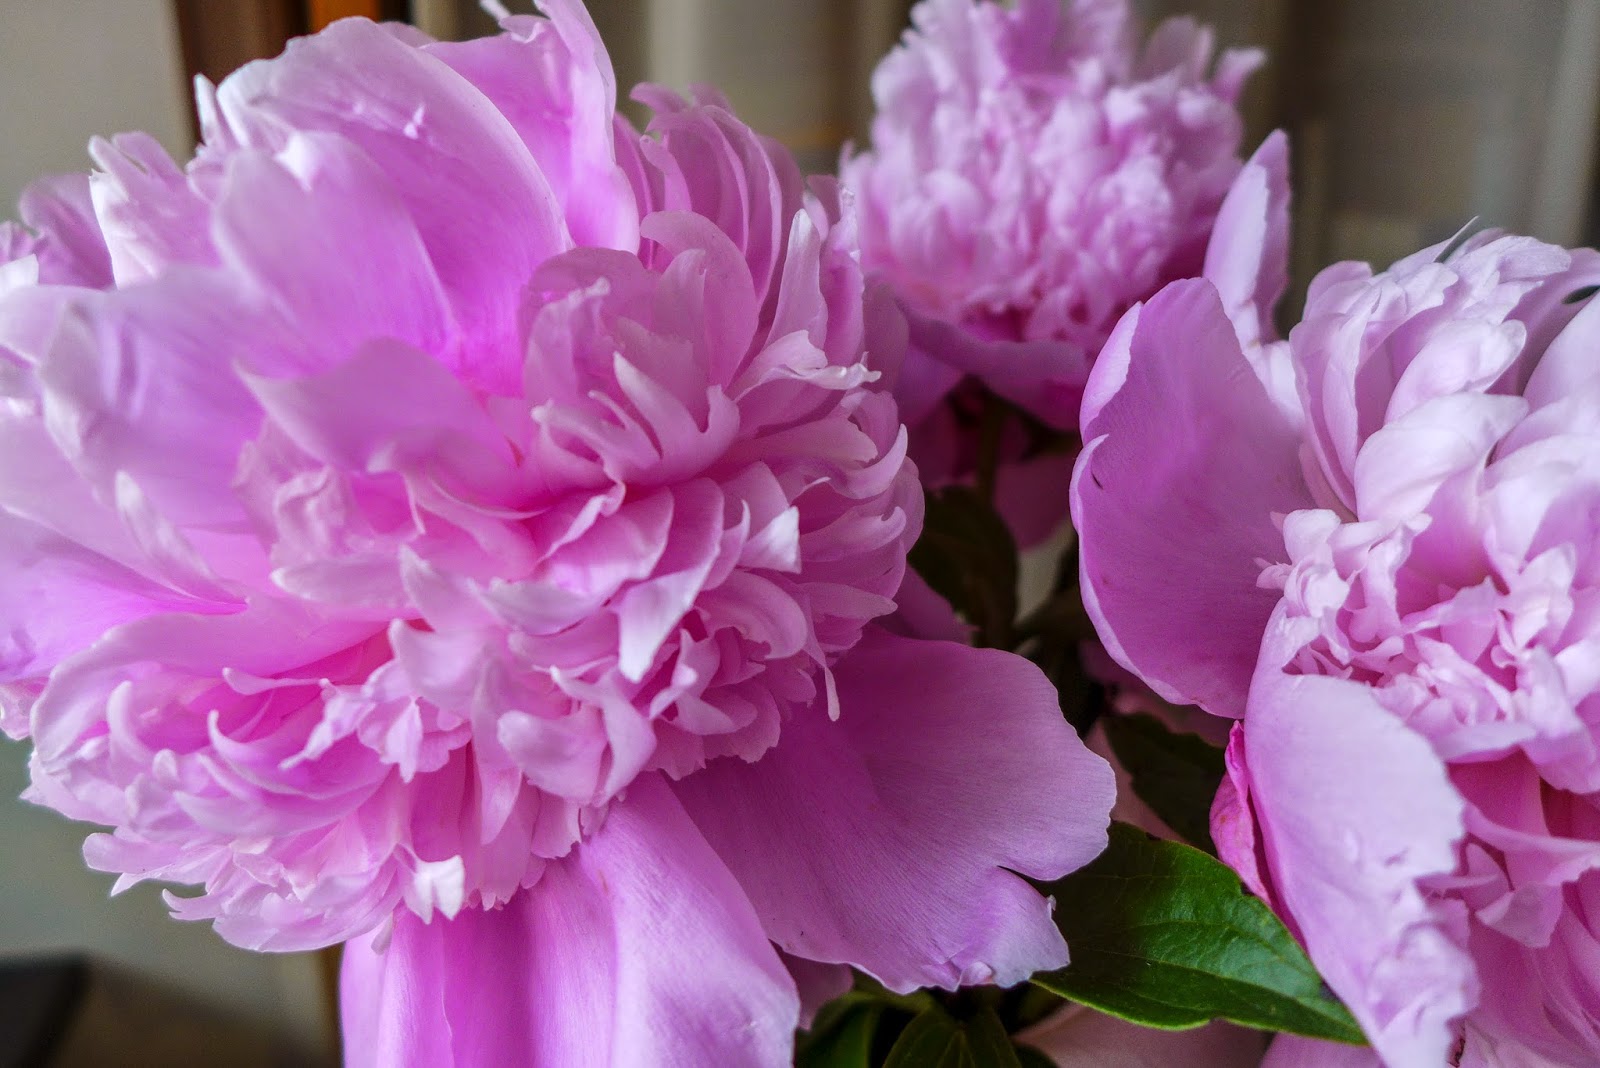 peonies, pink flowers